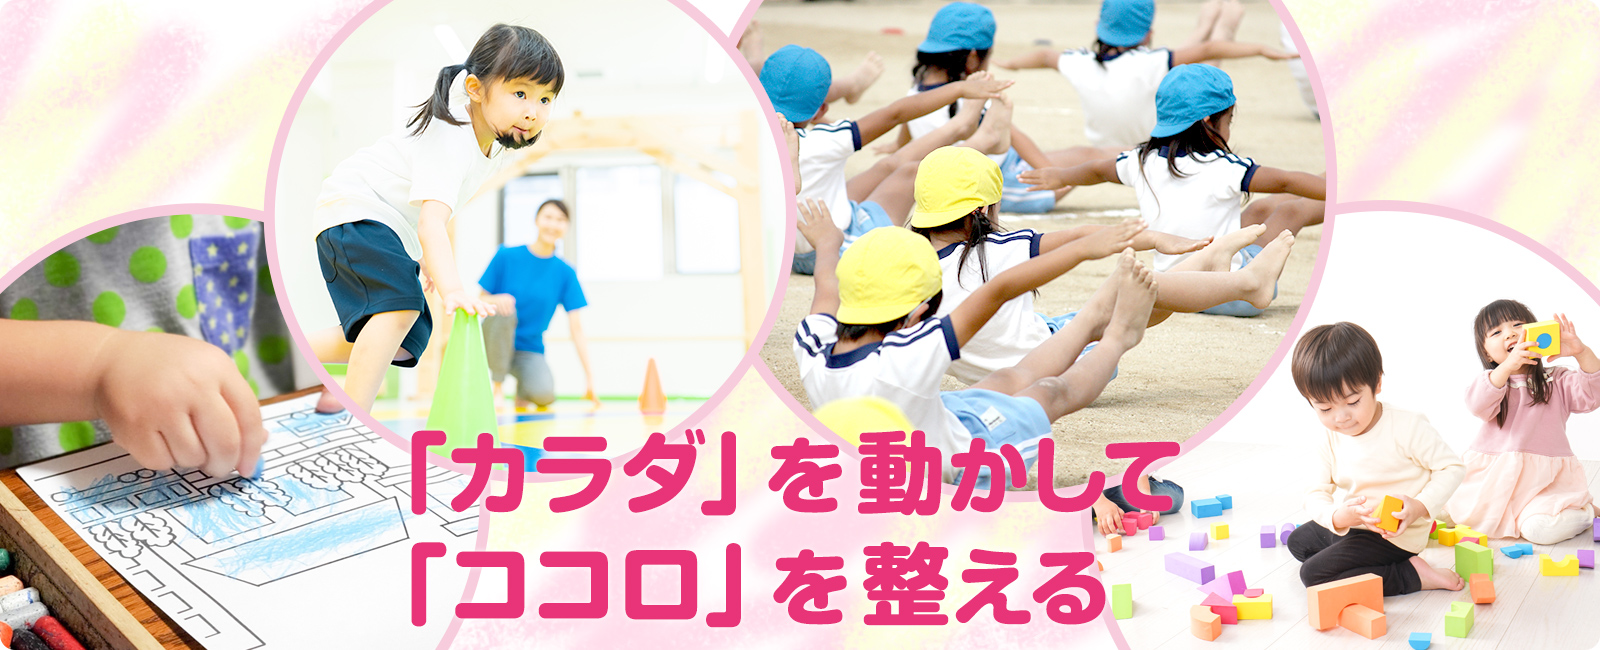 大阪市 天六 療育 児童発達支援・放課後等デイサービス